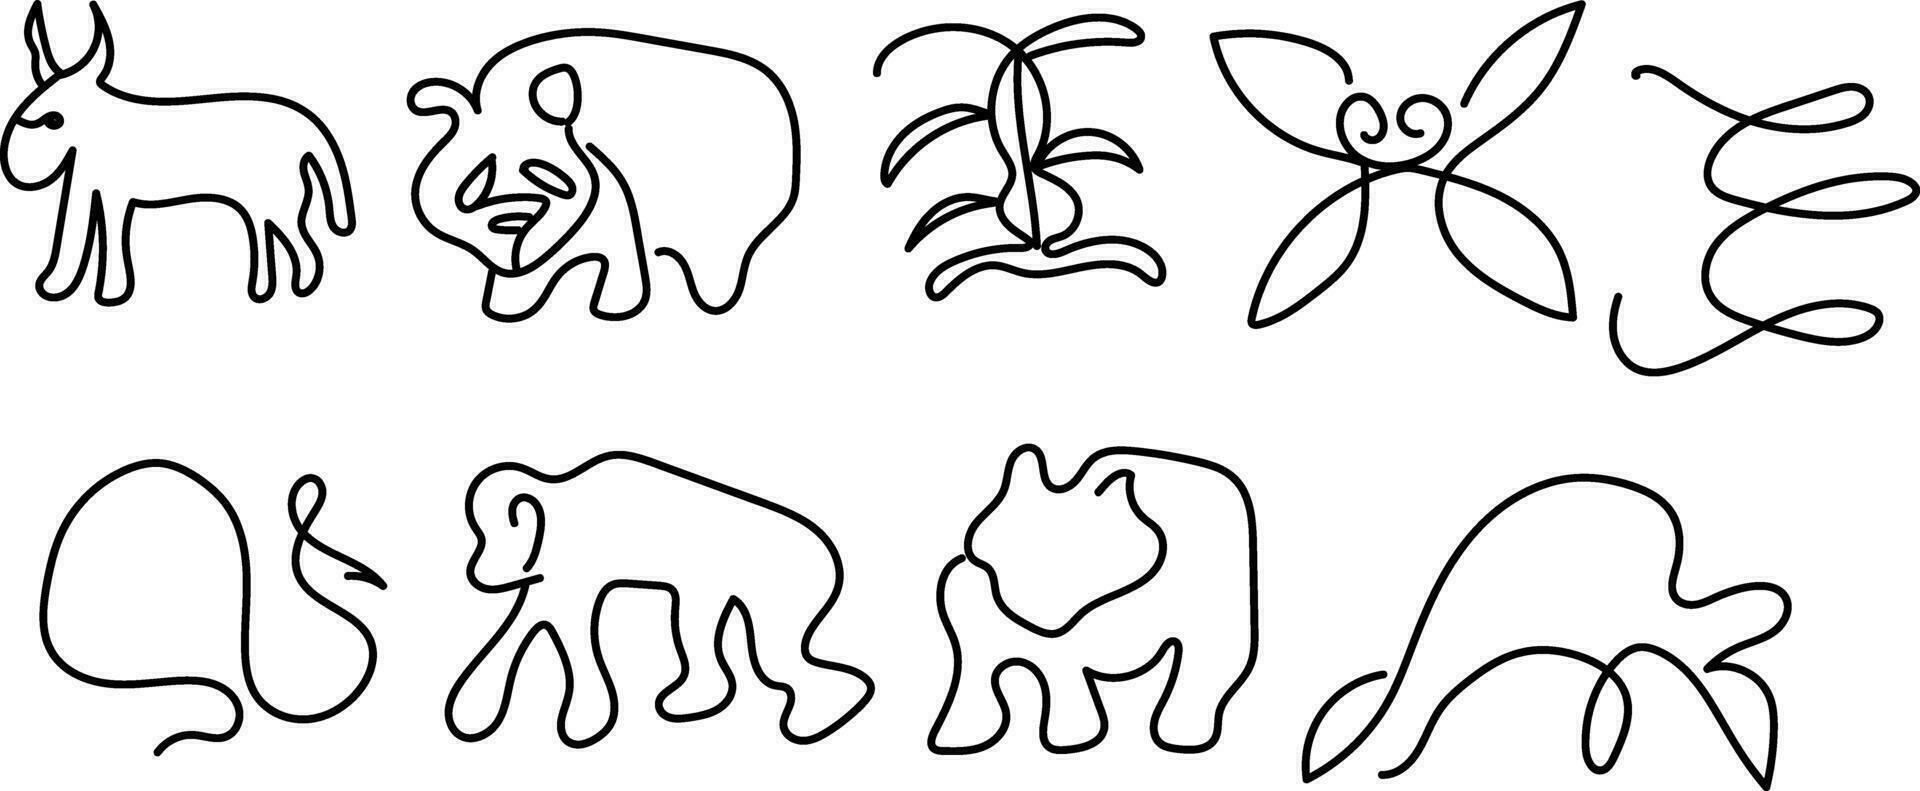 mundo animais selvagens dia, animal linha arte, contínuo 1 linha arte, desenhando vetor ilustração isolado em branco fundo.